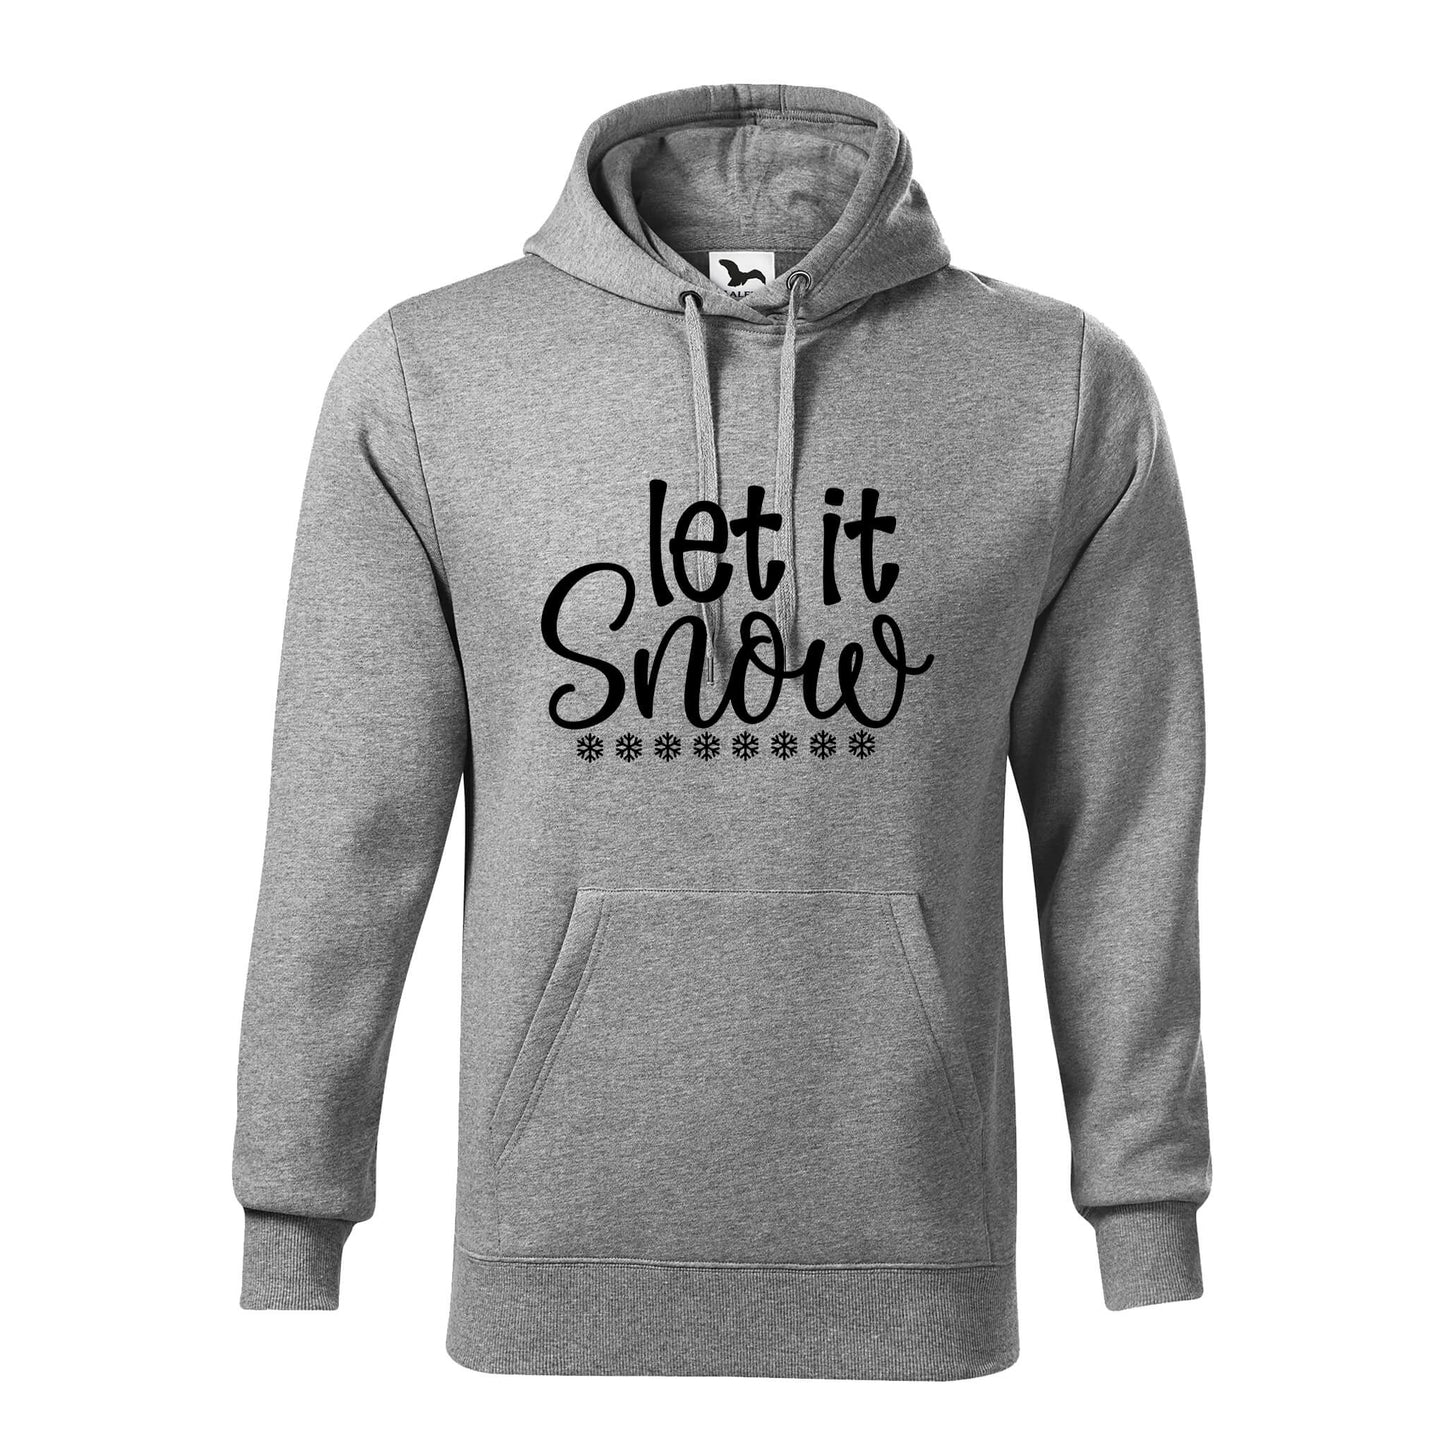 Let it snow hoodie - rvdesignprint